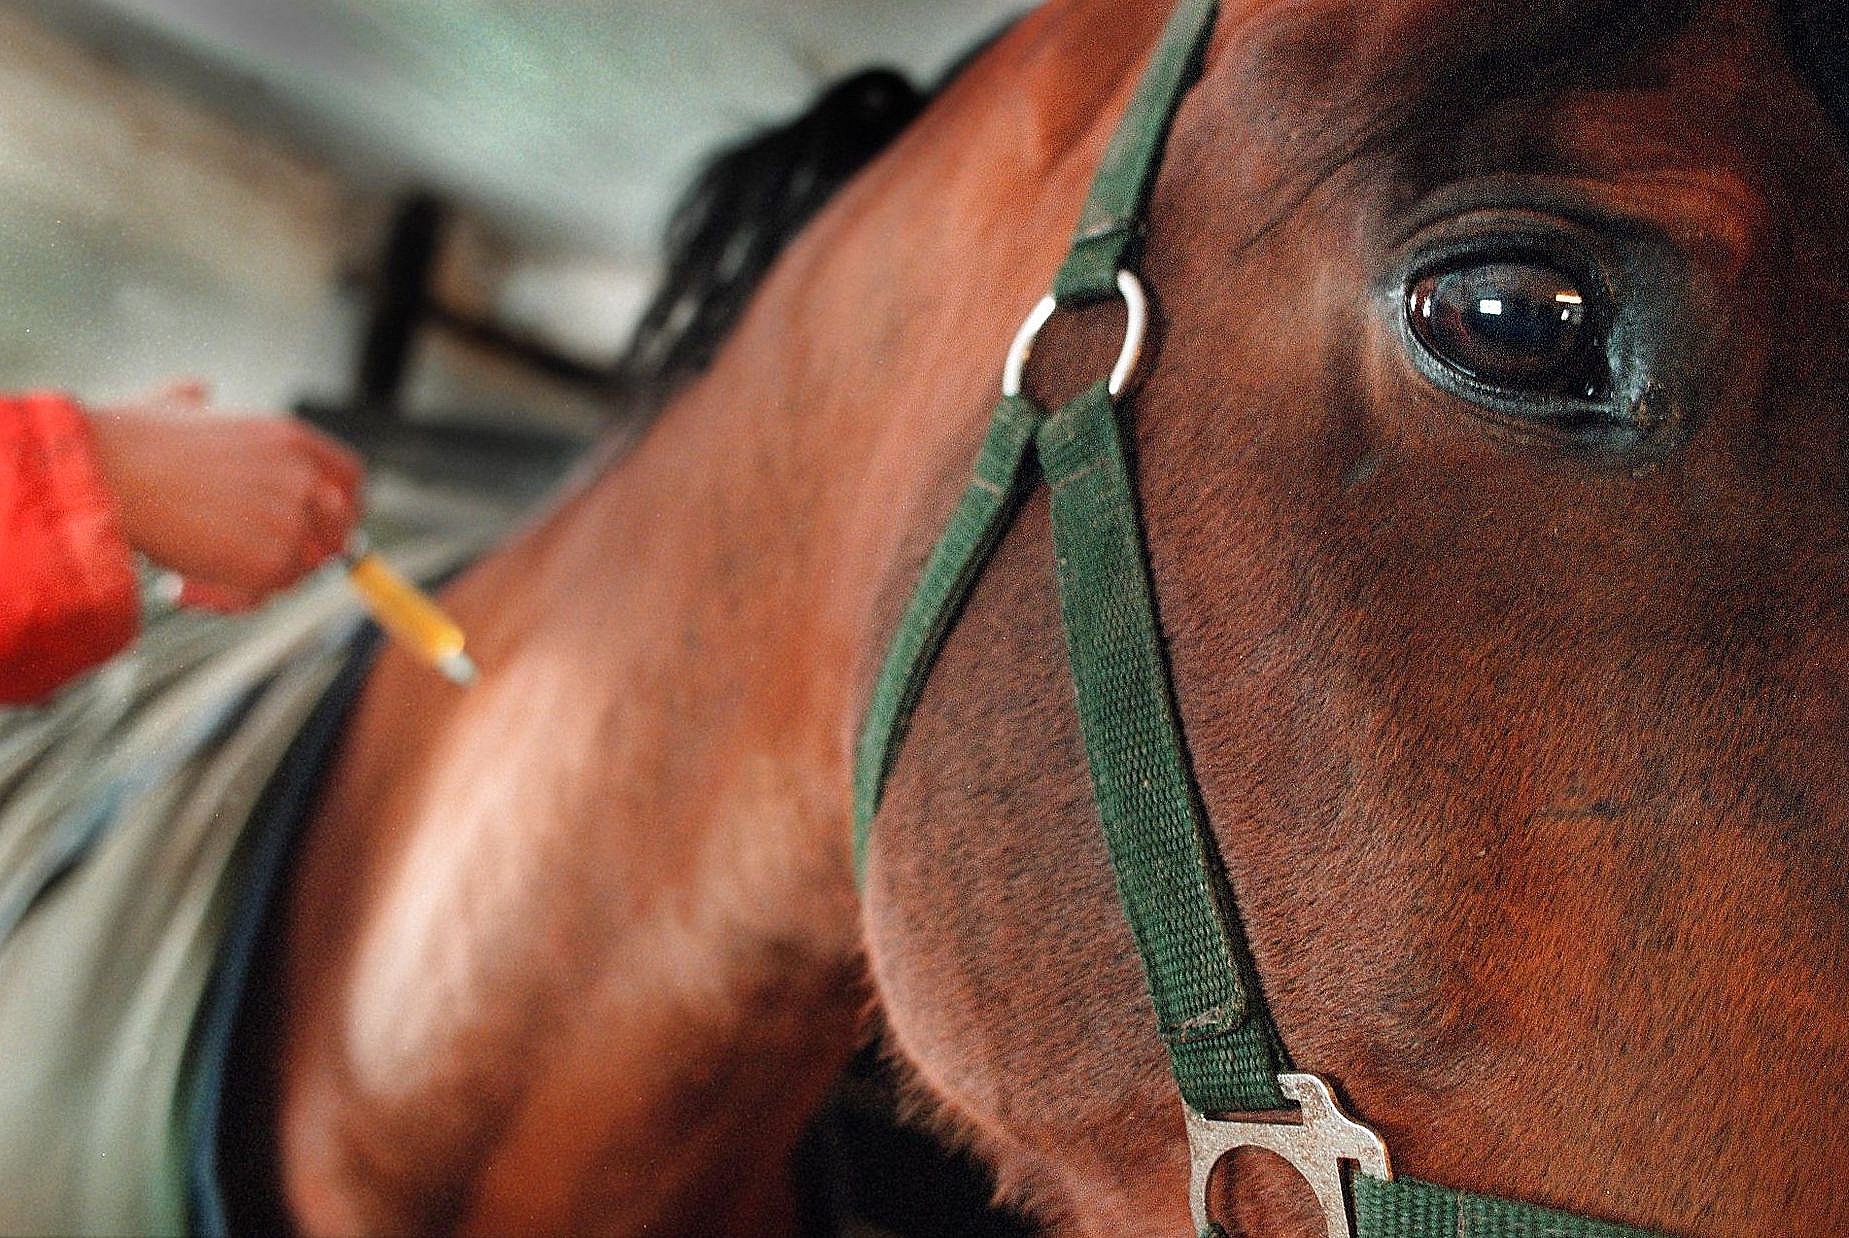 Heste sultede og tørstede halvt år - dyrlæge aldrig set noget | TV2 Fyn